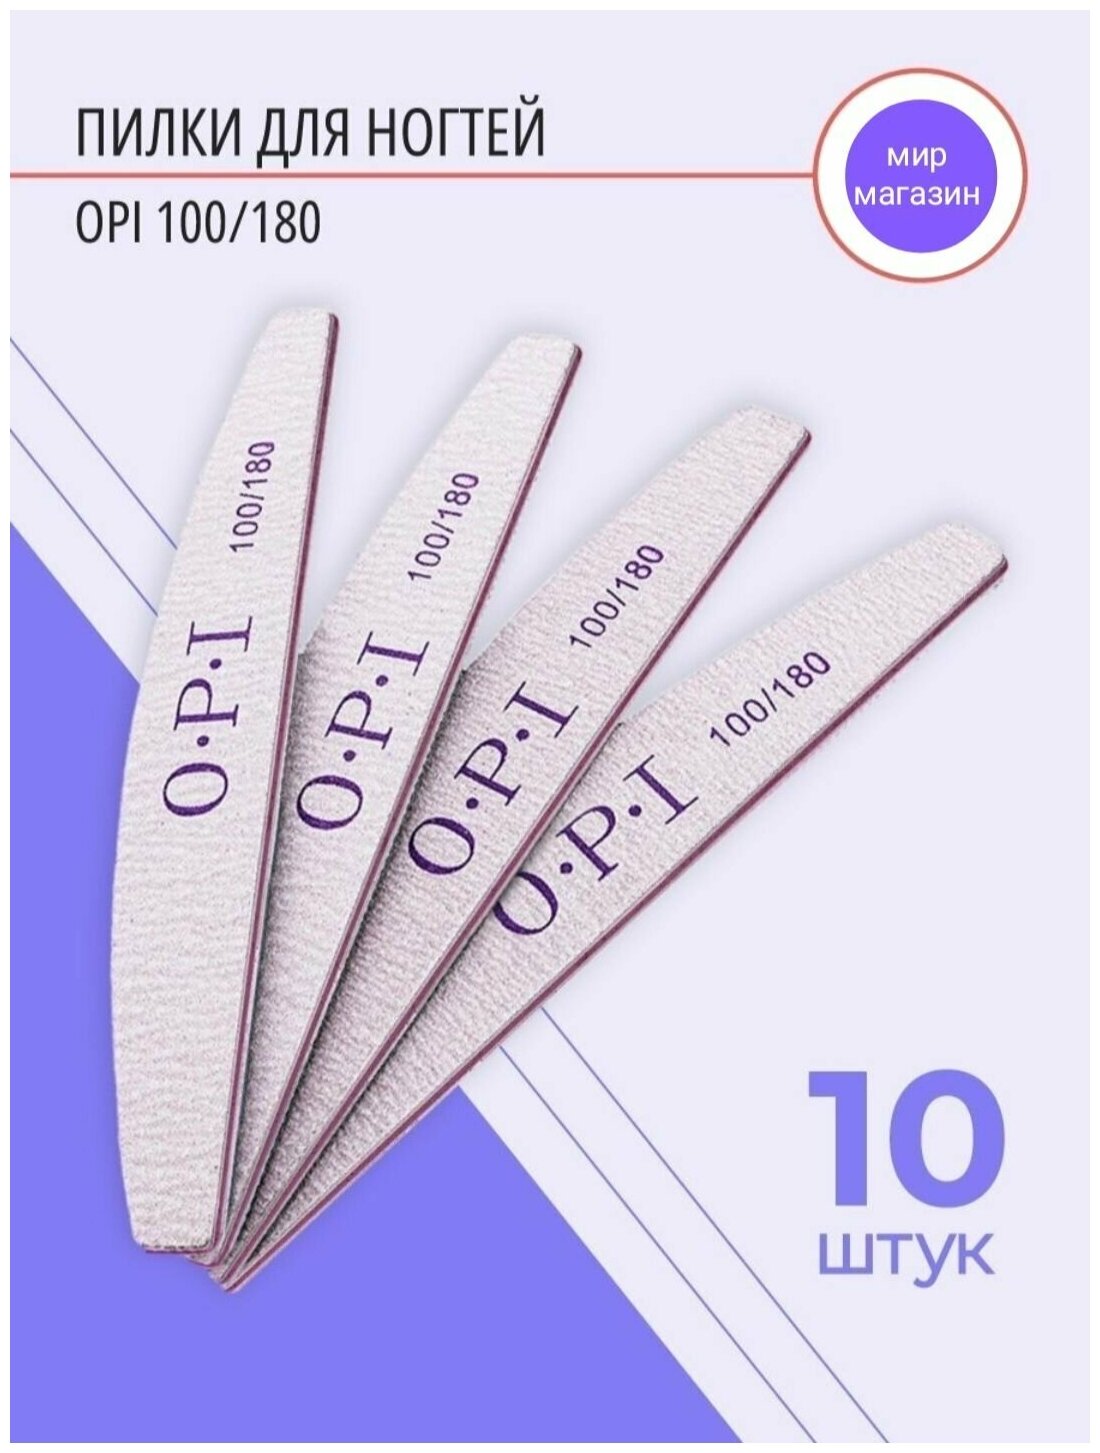 Пилки для ногтей для маникюра 10 штук(100/180) грит набор OPI